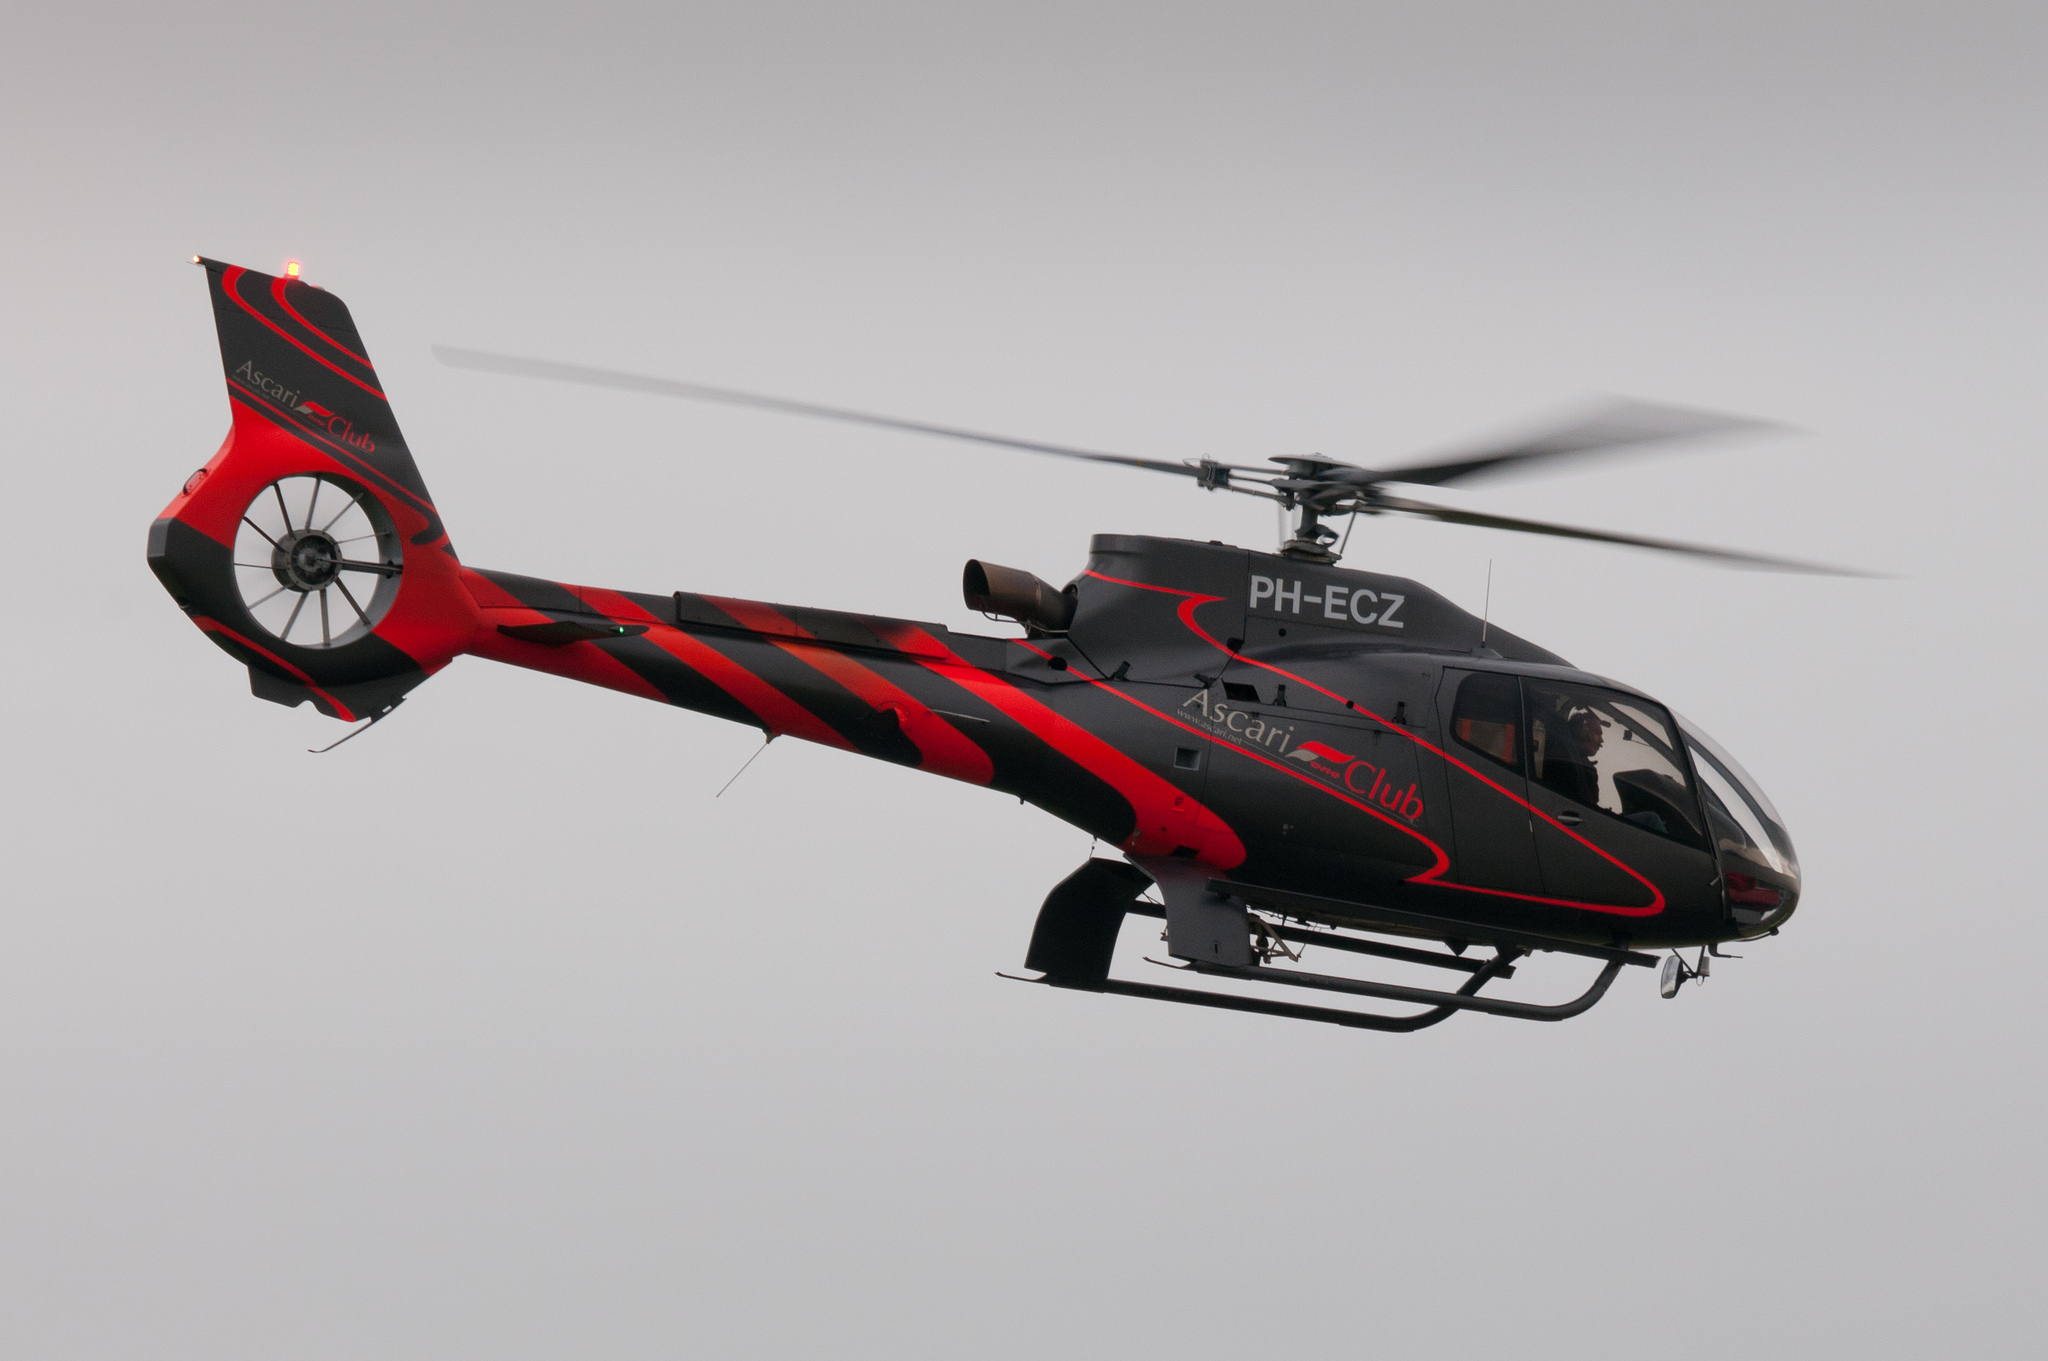 Laden Sie Eurocopter HD-Desktop-Hintergründe herunter